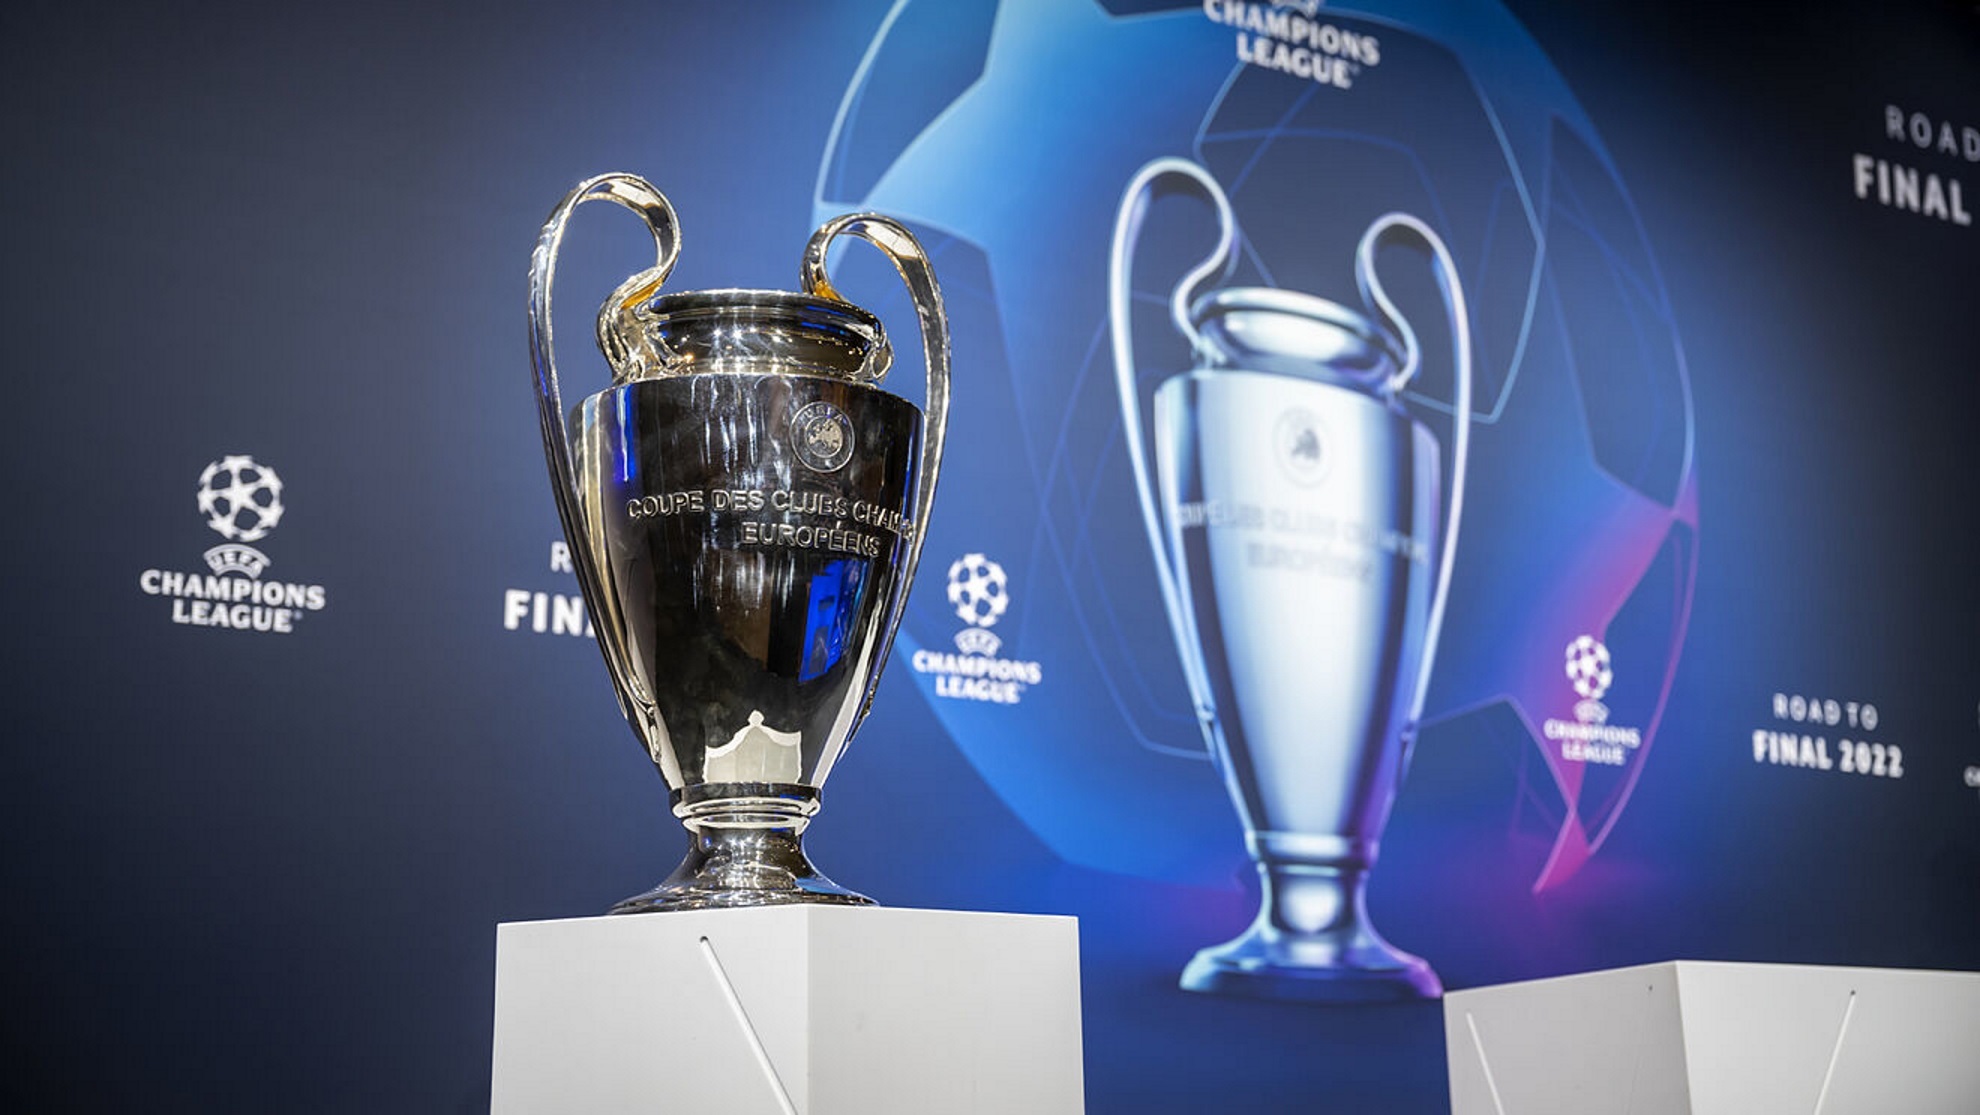 Final Champions League 2022: ¿Cuándo Y A Qué Hora Será El Partido Real Madrid - Liverpool? ¿A Qué Hora Es La Final De La Champions League 2022?  Https://Larevistadelsureste.com